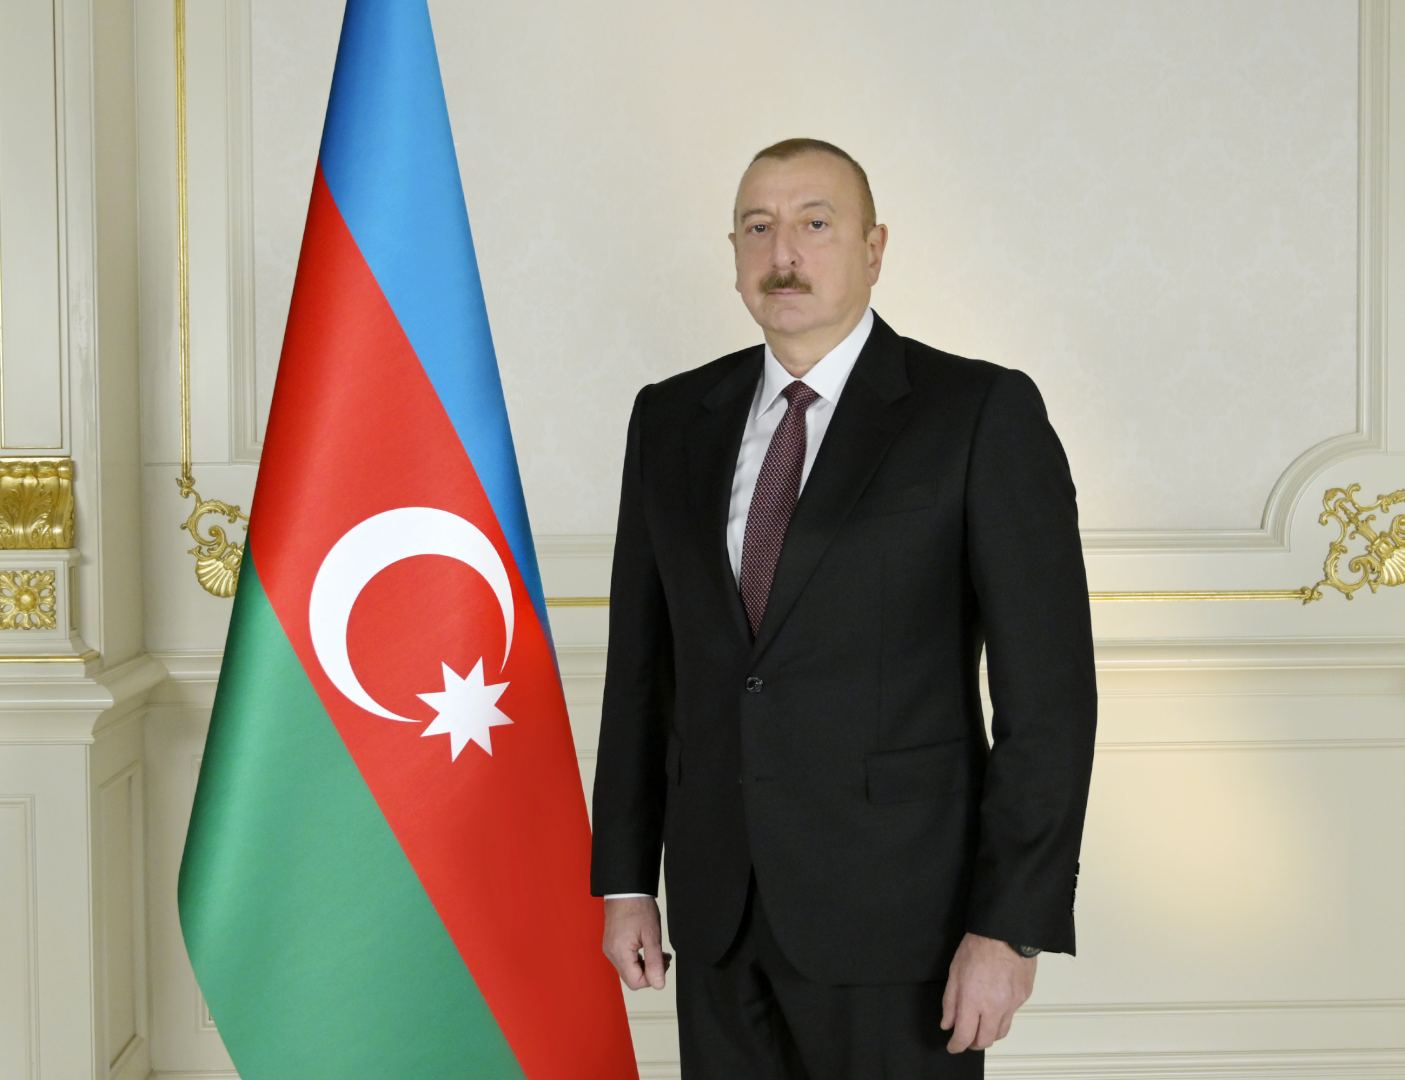 Освобожден от должности председатель правления Государственного рекламного агентства Азербайджана - Распоряжение